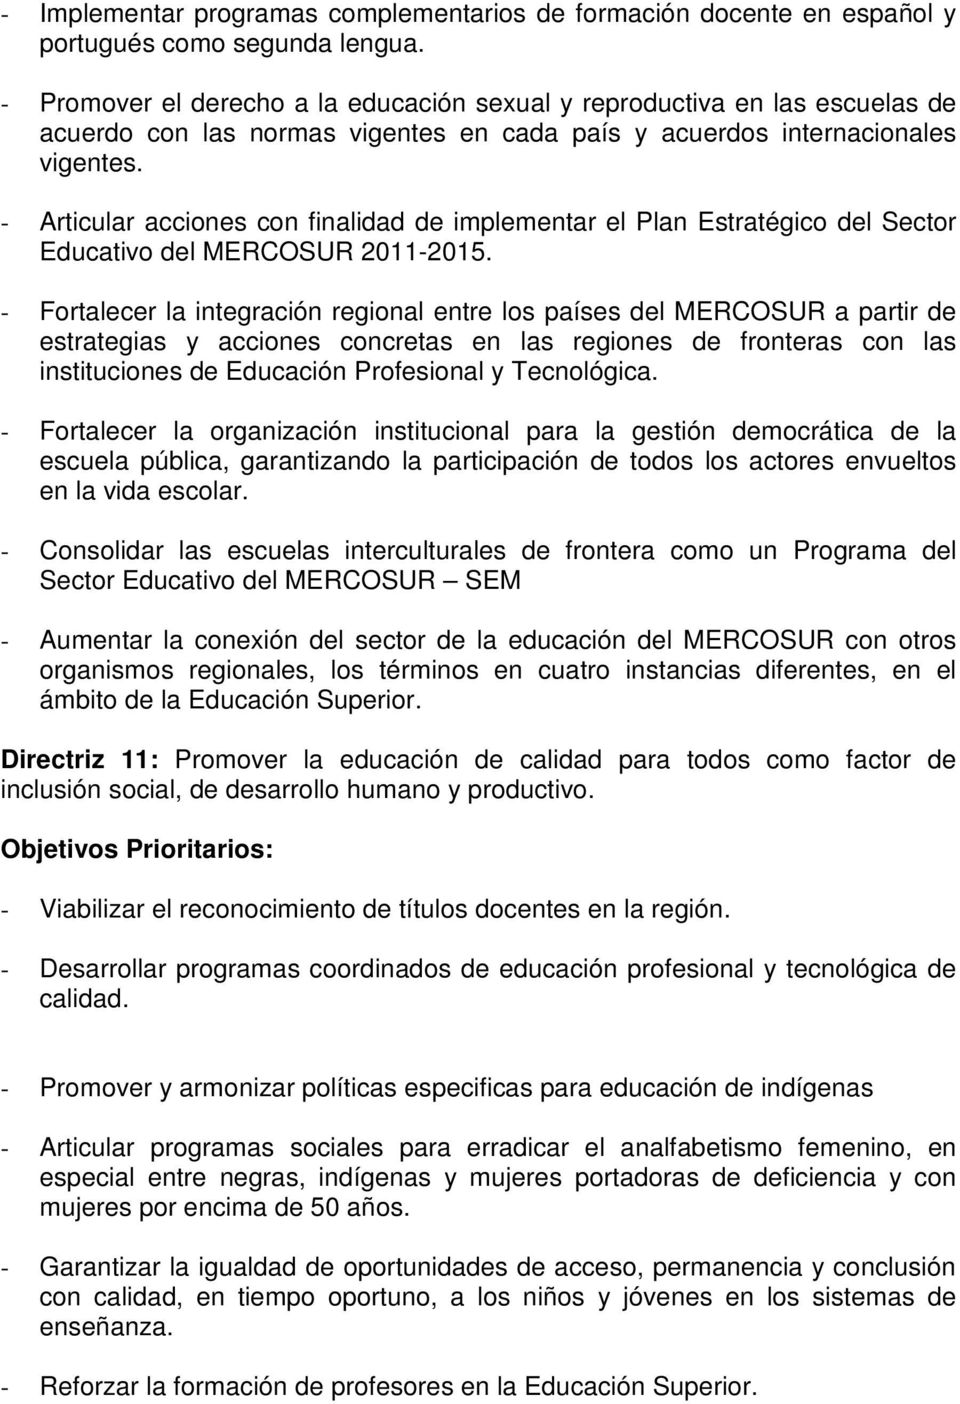 - Articular acciones con finalidad de implementar el Plan Estratégico del Sector Educativo del MERCOSUR 2011-2015.